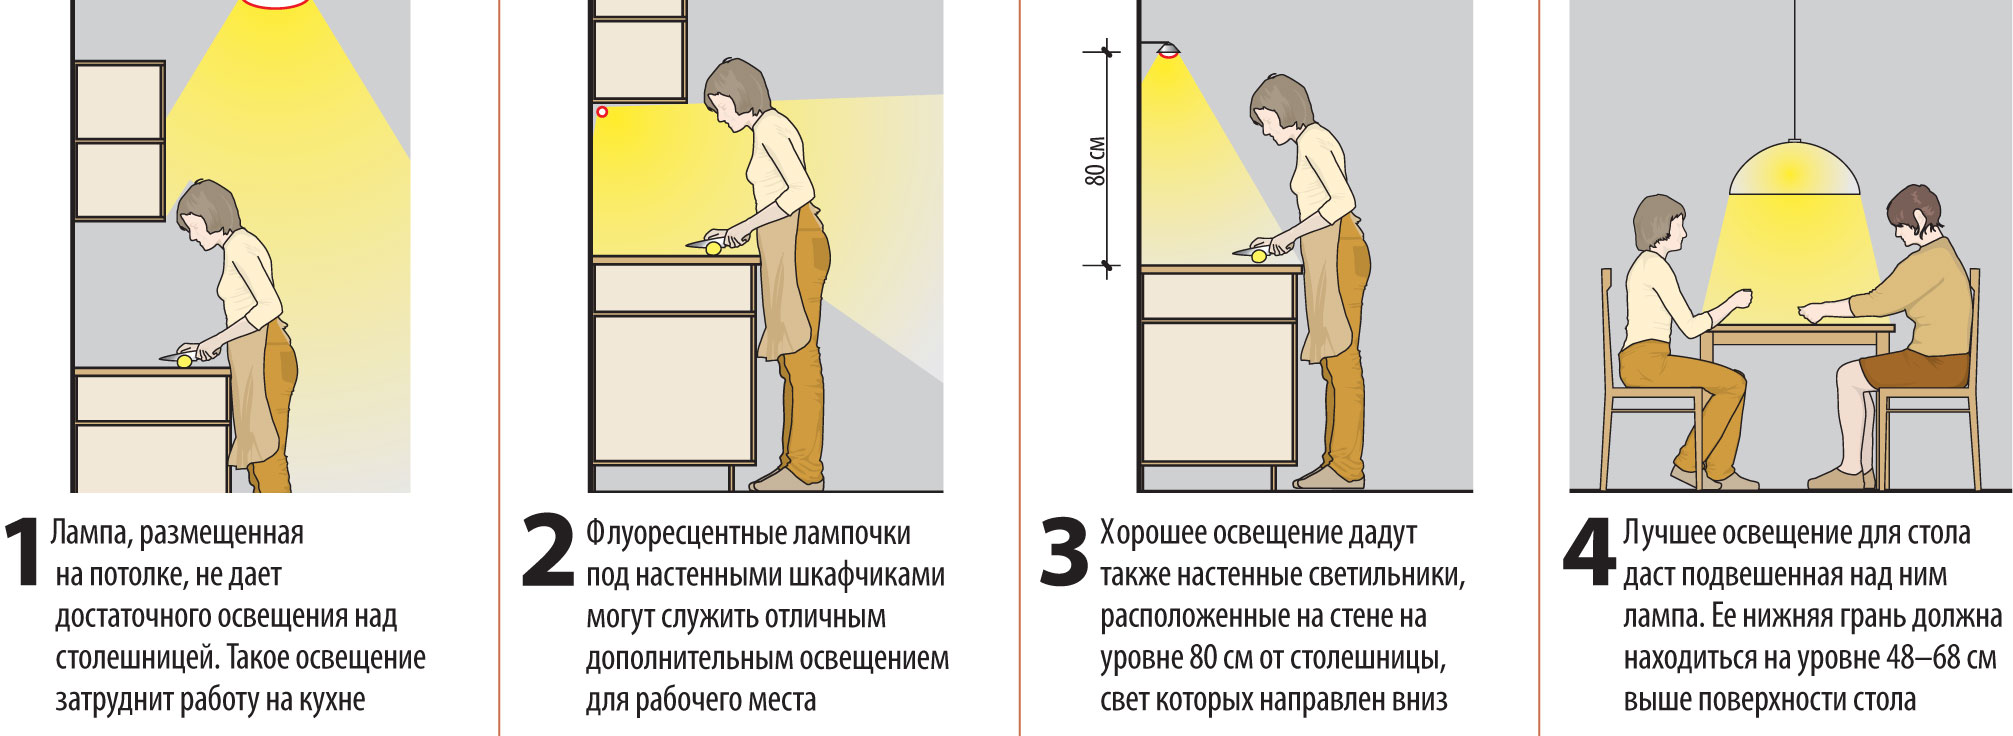 Как сделать светодиодную подсветку кухонного гарнитура своими руками